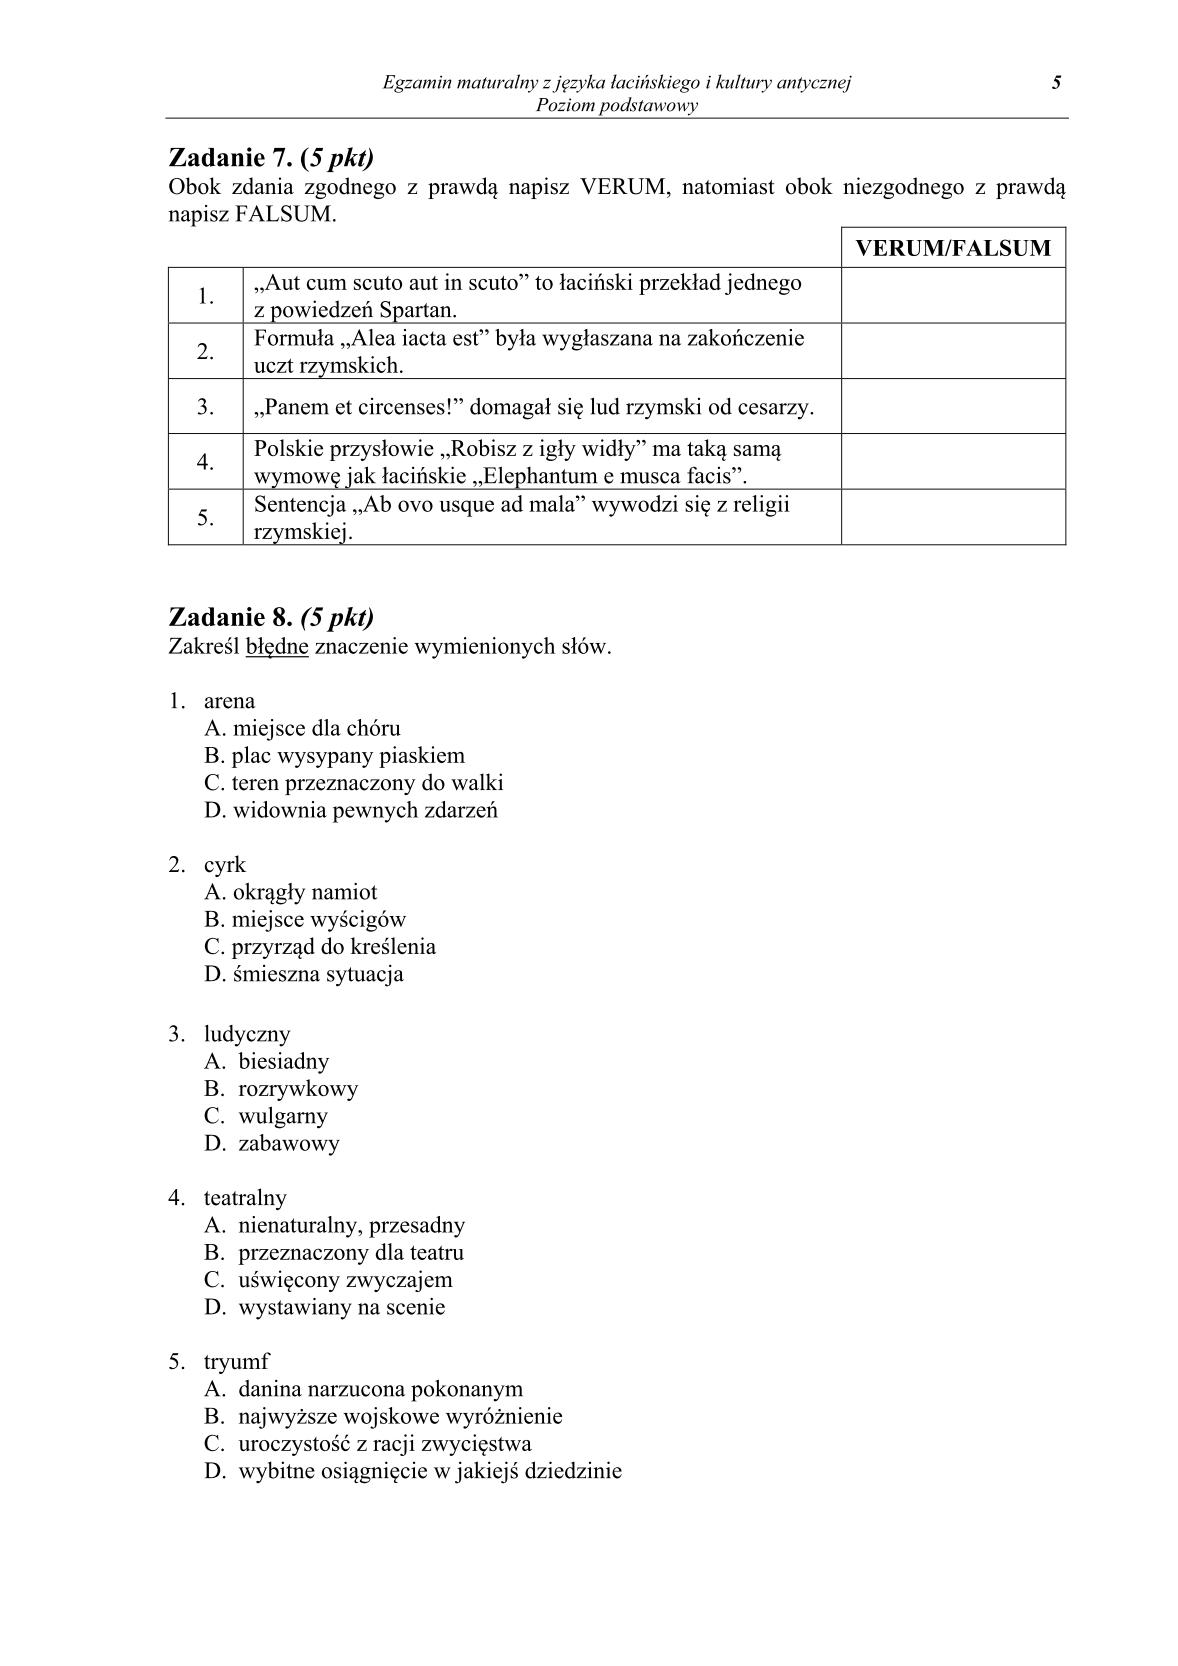 pytania-jezyk-lacinski-i-kultura-antyczna-poziom-podstawowy-matura-2014-str.5